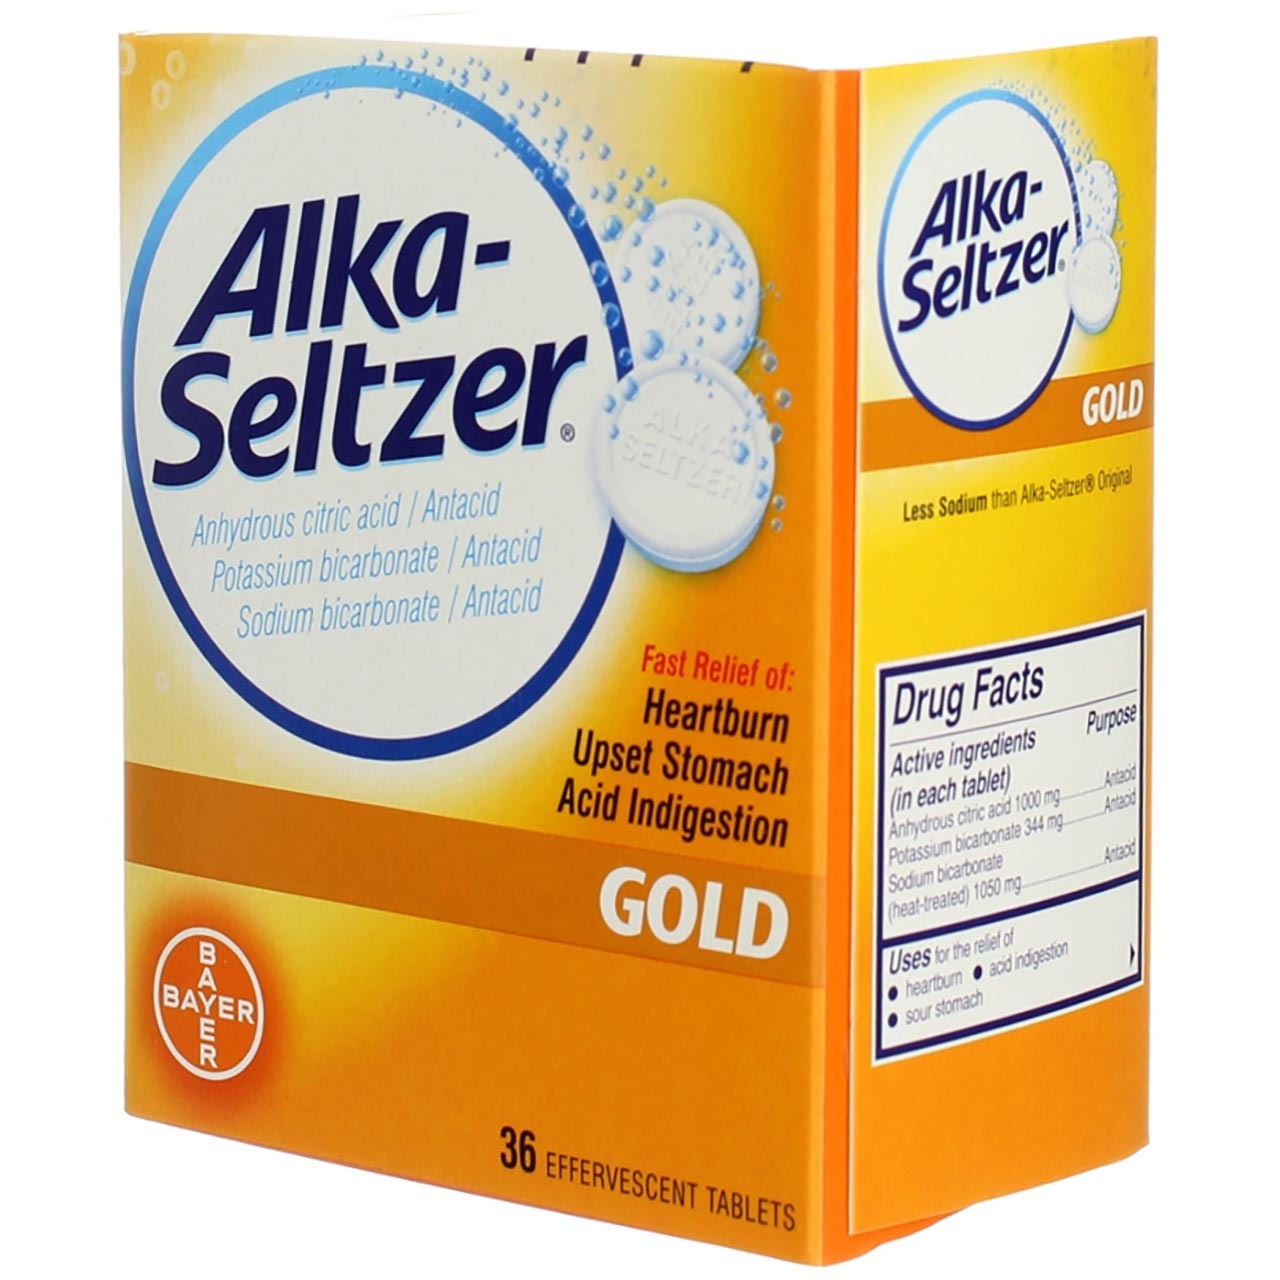 Alka-Seltzer Effervescent Tablets Gold 36 Tablets (Pack of 3) - image 5 of 6